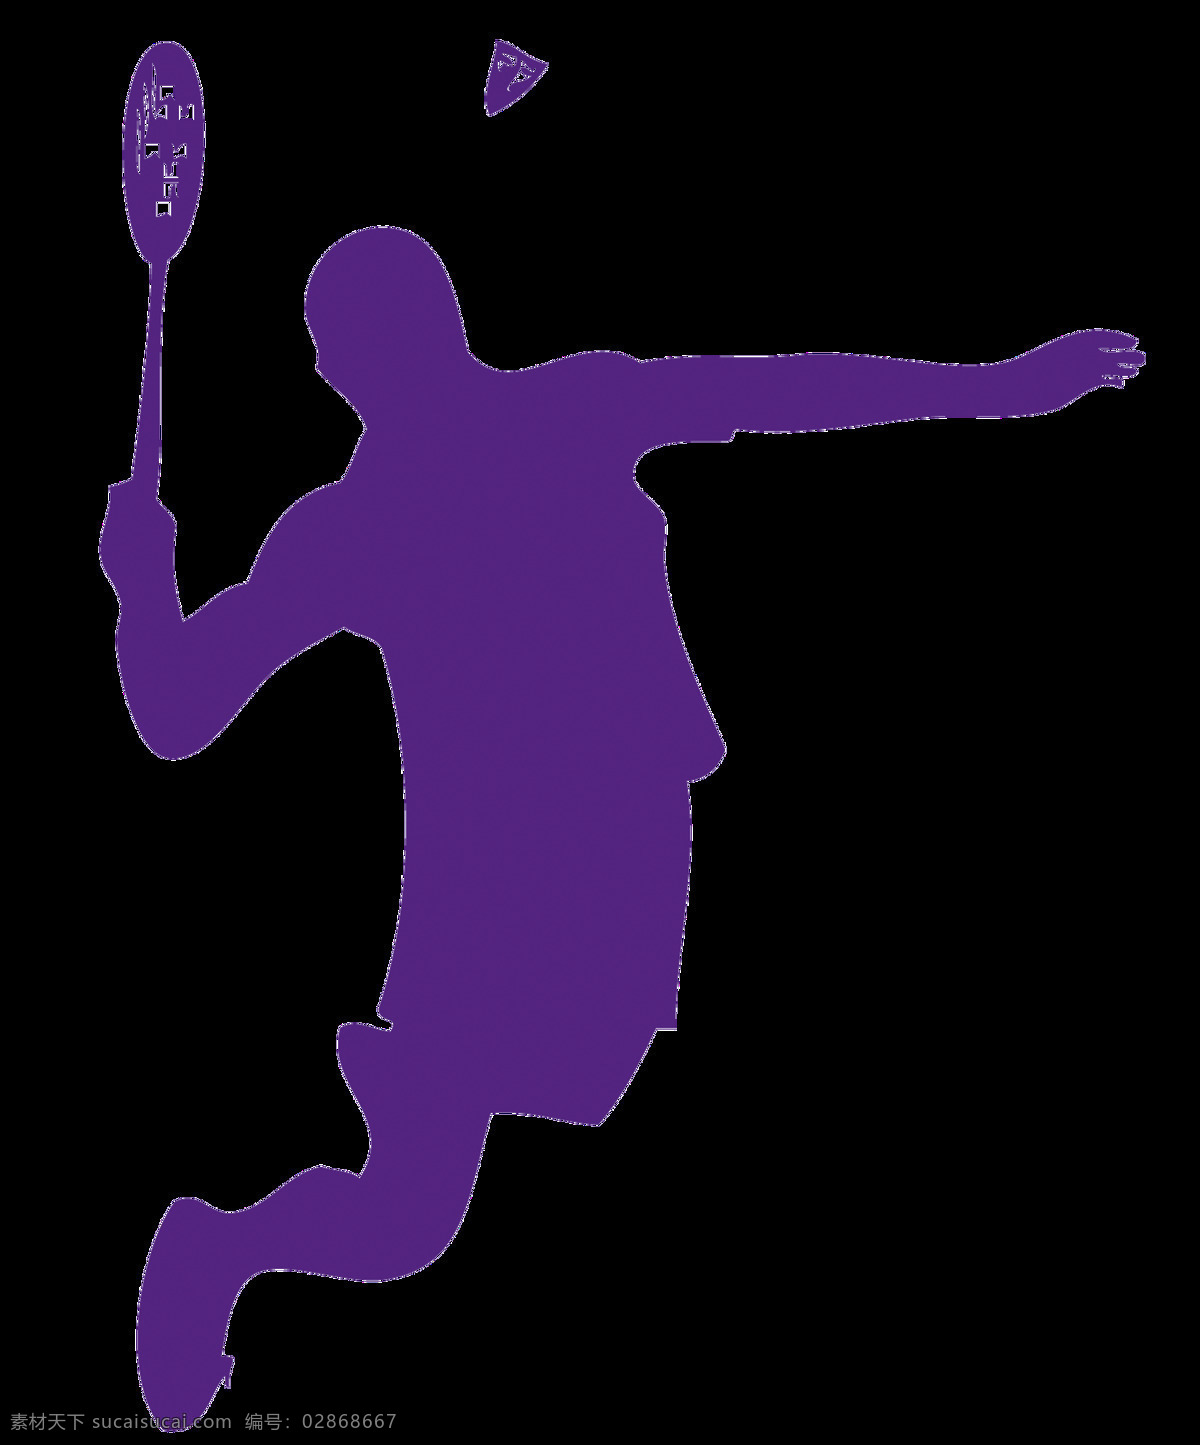 紫色 羽毛球 剪影 免 抠 透明 羽毛球卡通画 卡通画 羽毛球简笔画 户外羽毛球 羽毛球拍素材 羽毛球拍子 羽毛球图片